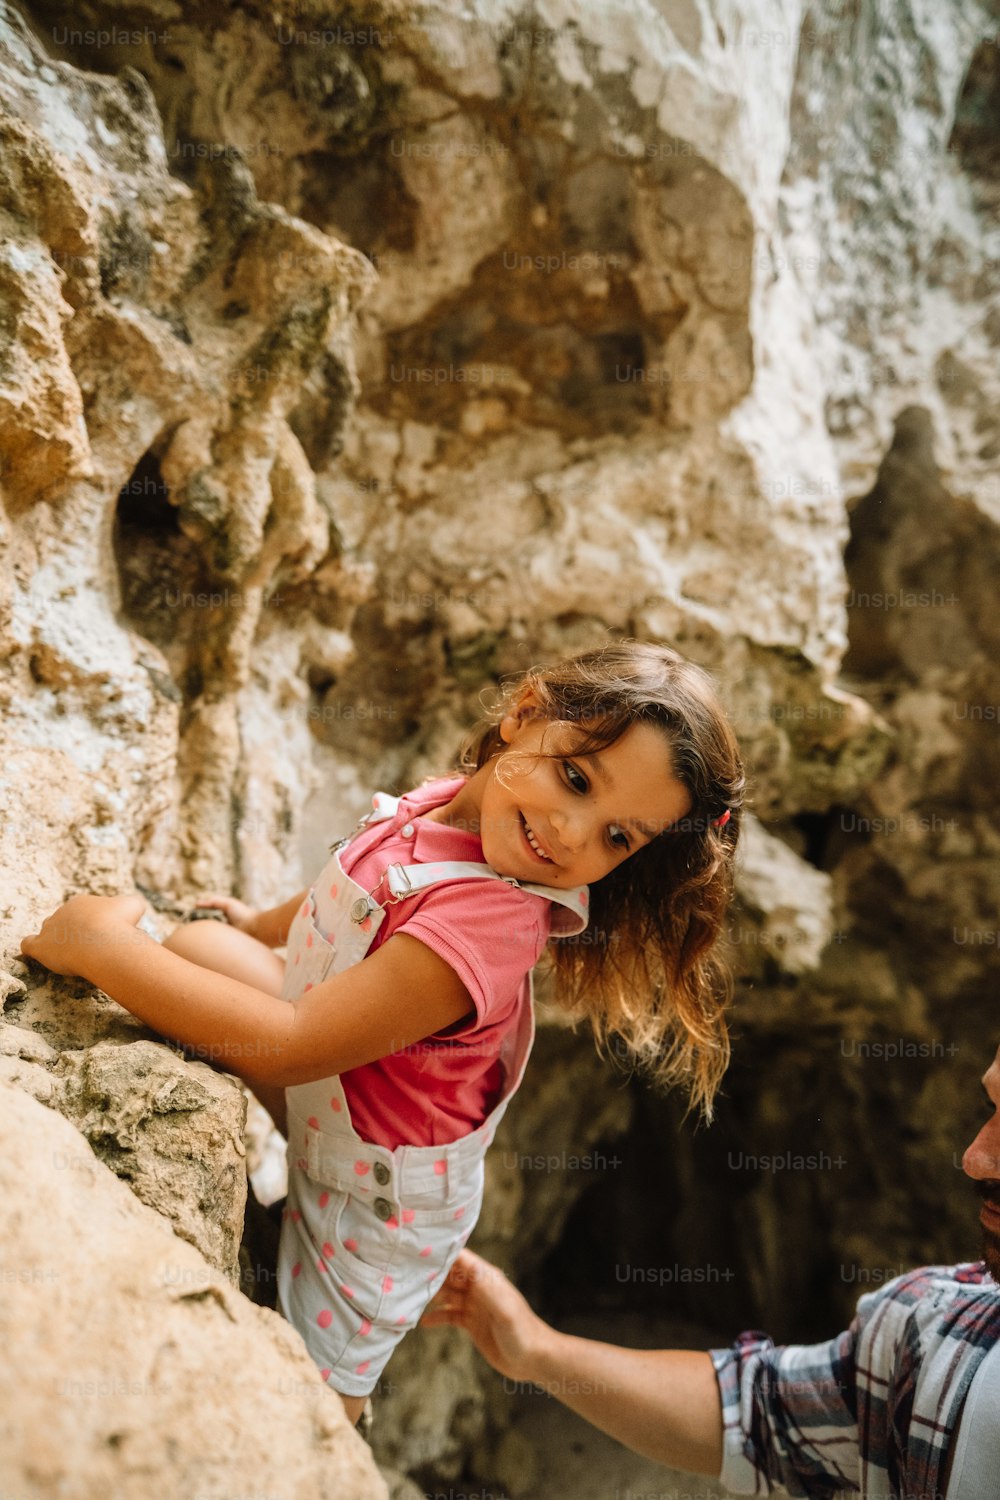 Un hombre sosteniendo a una niña pequeña encima de una roca